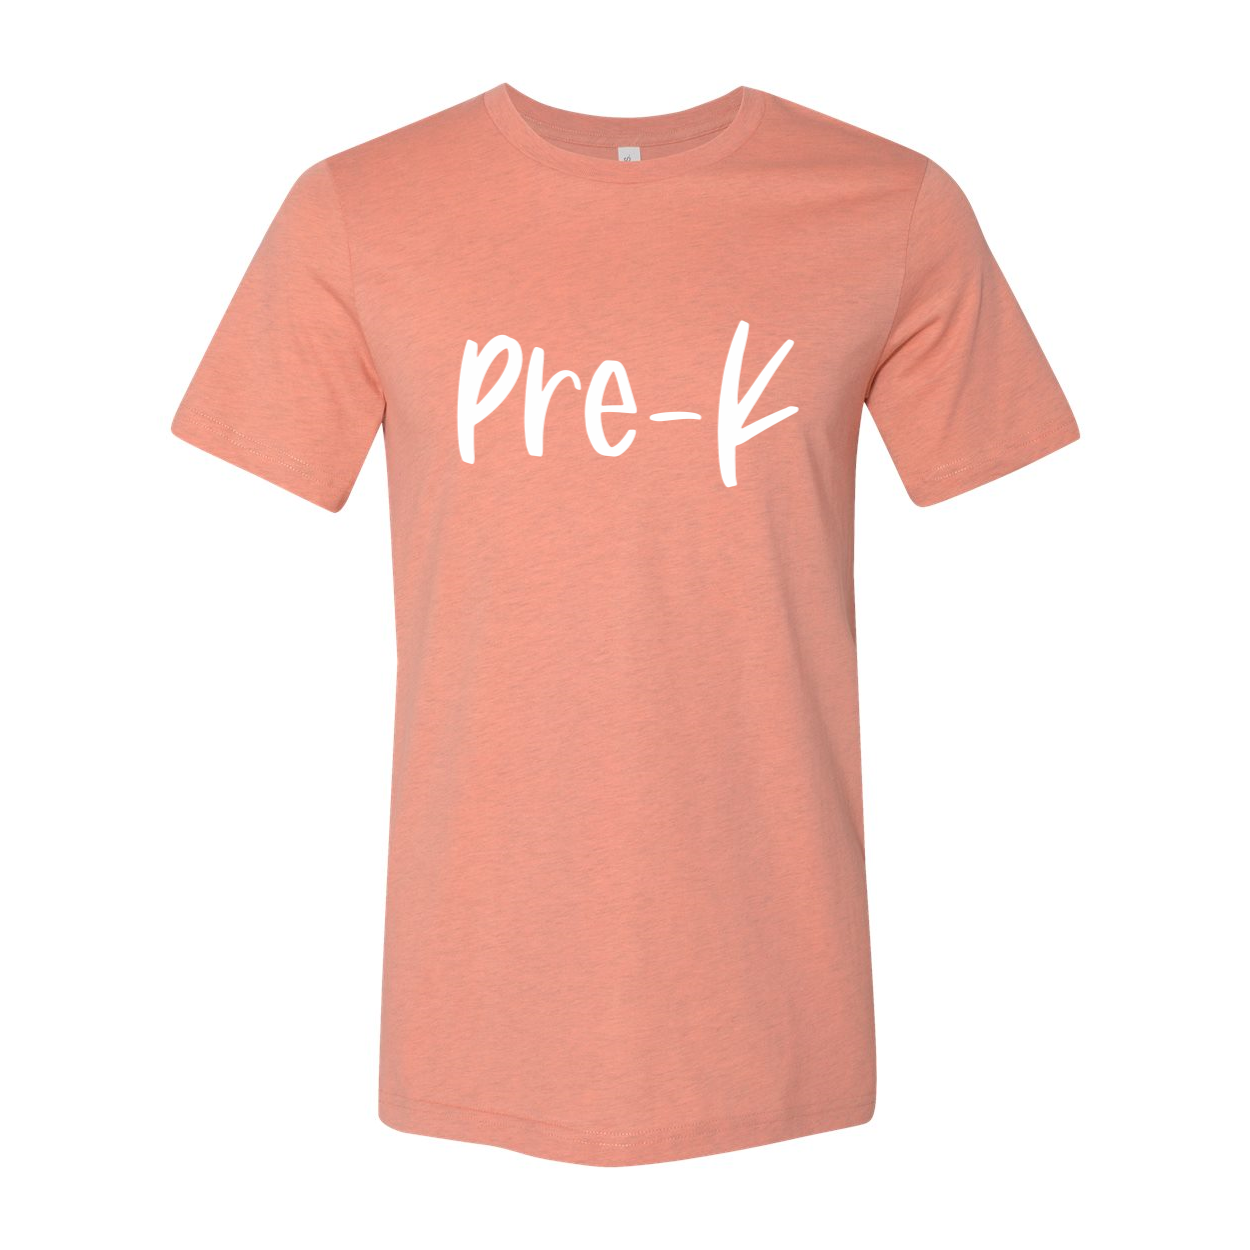 Pre-K Soft T-Shirt